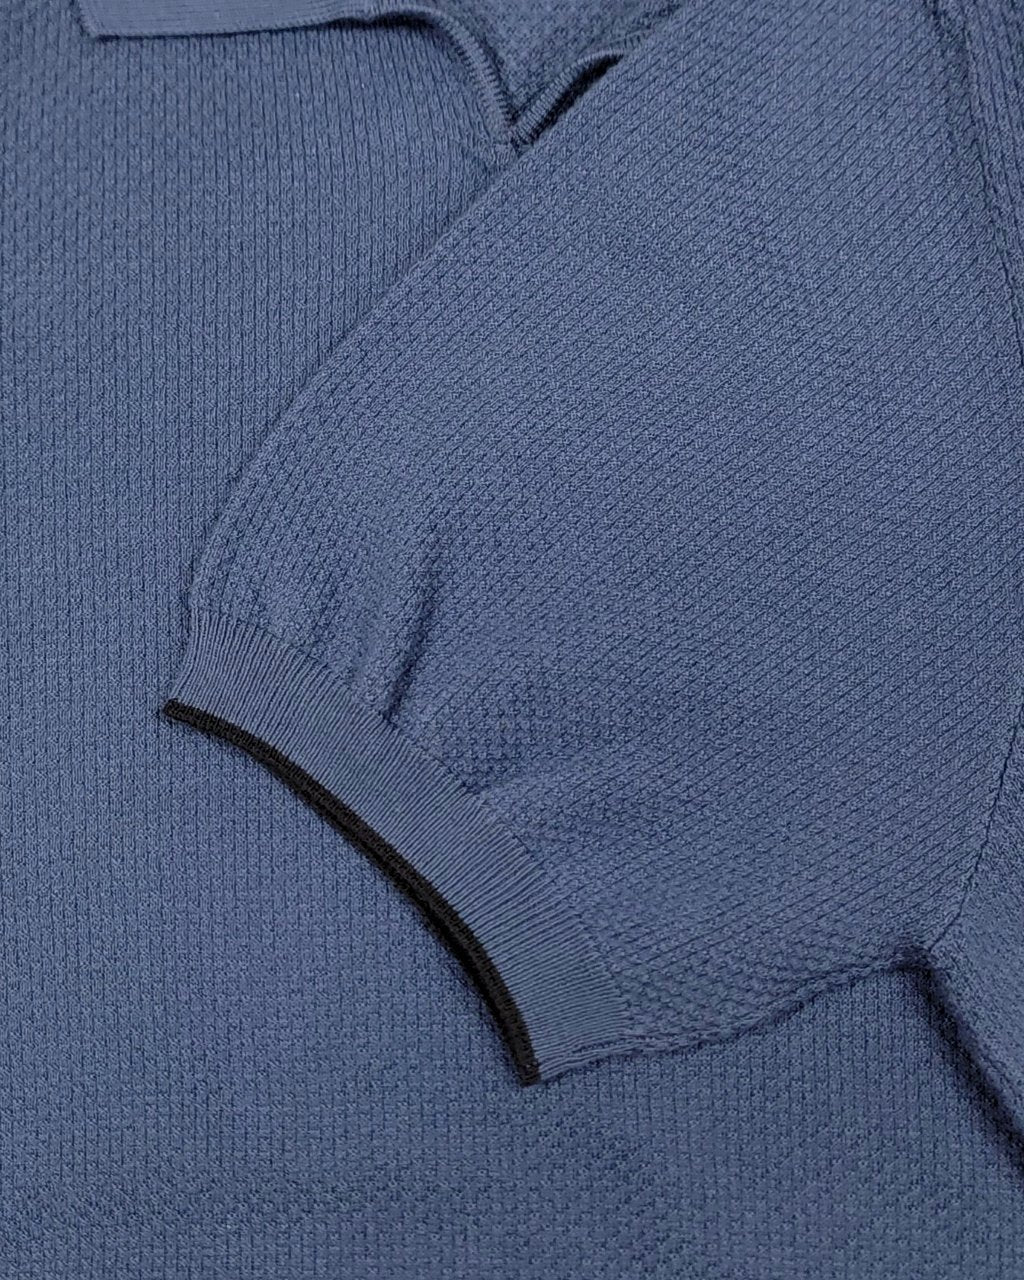 Ferrante Knit Polo in Blue